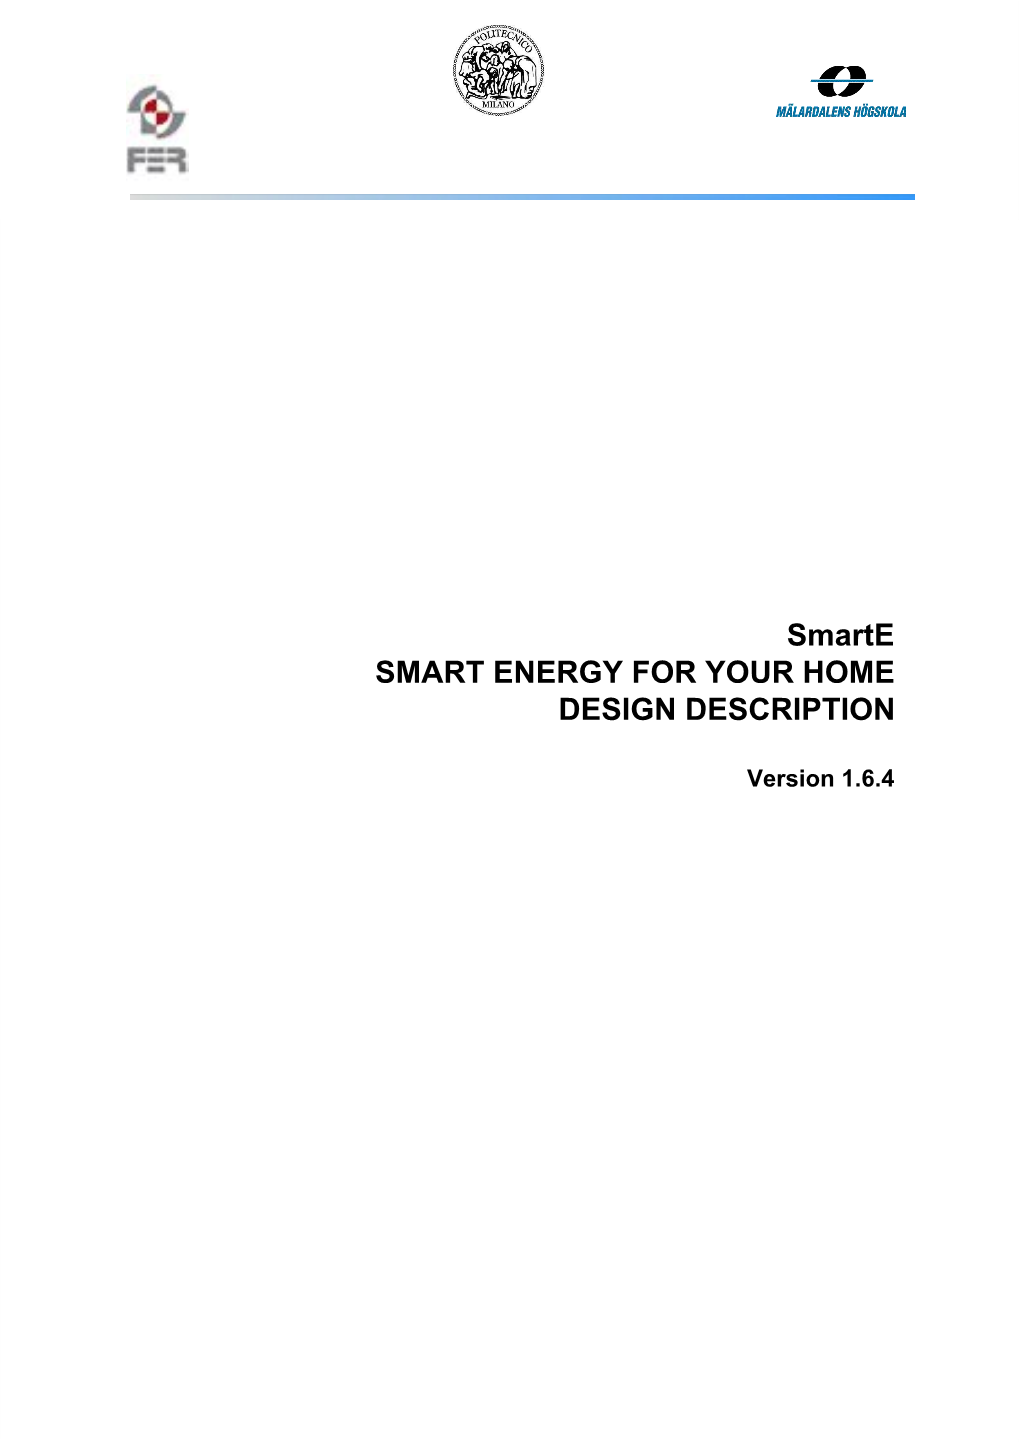 Smarte SMART ENERGY for YOUR HOME DESIGN DESCRIPTION